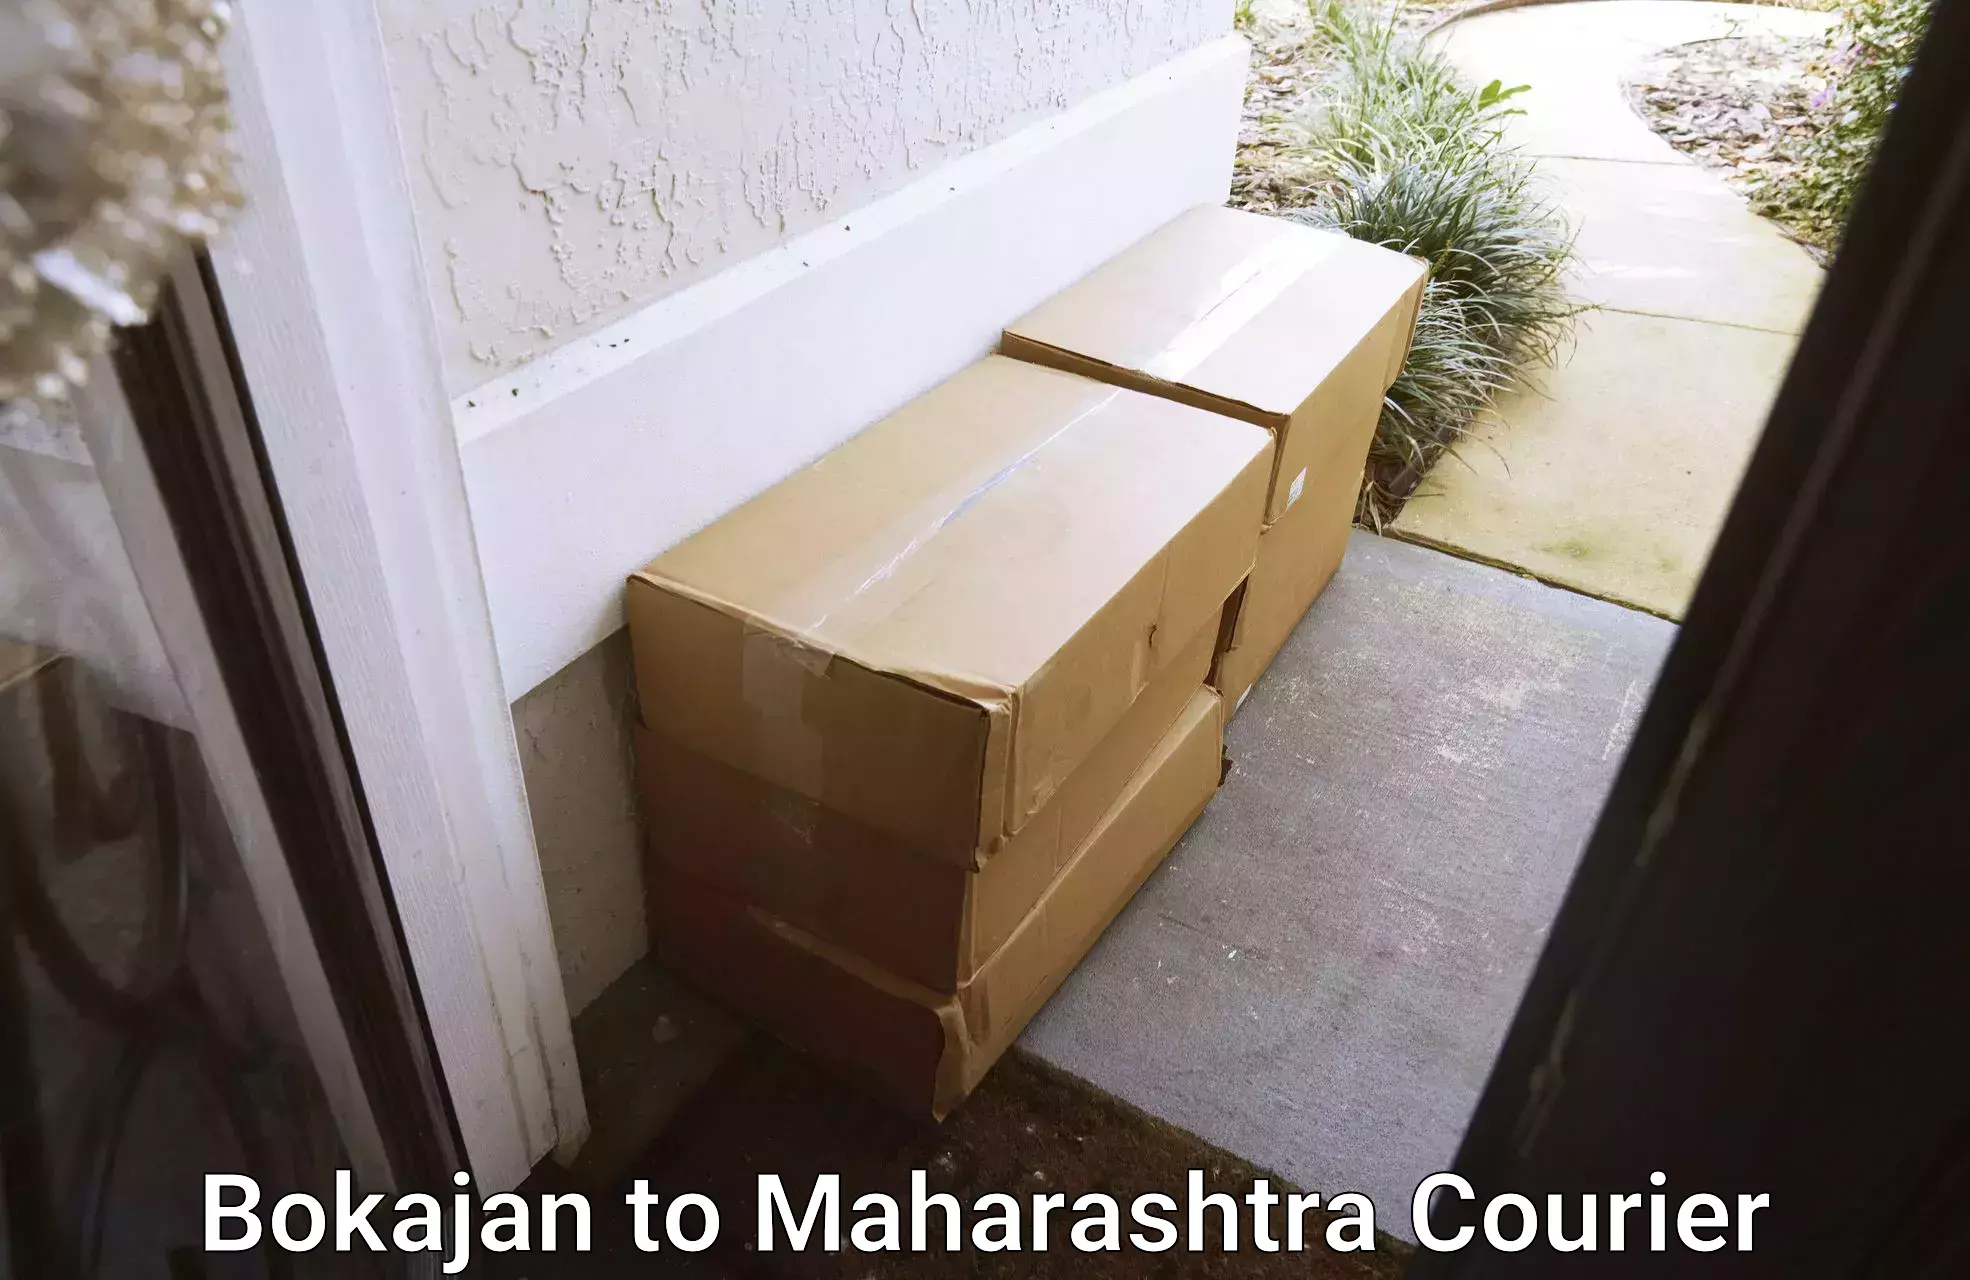 Express delivery solutions Bokajan to Maharashtra